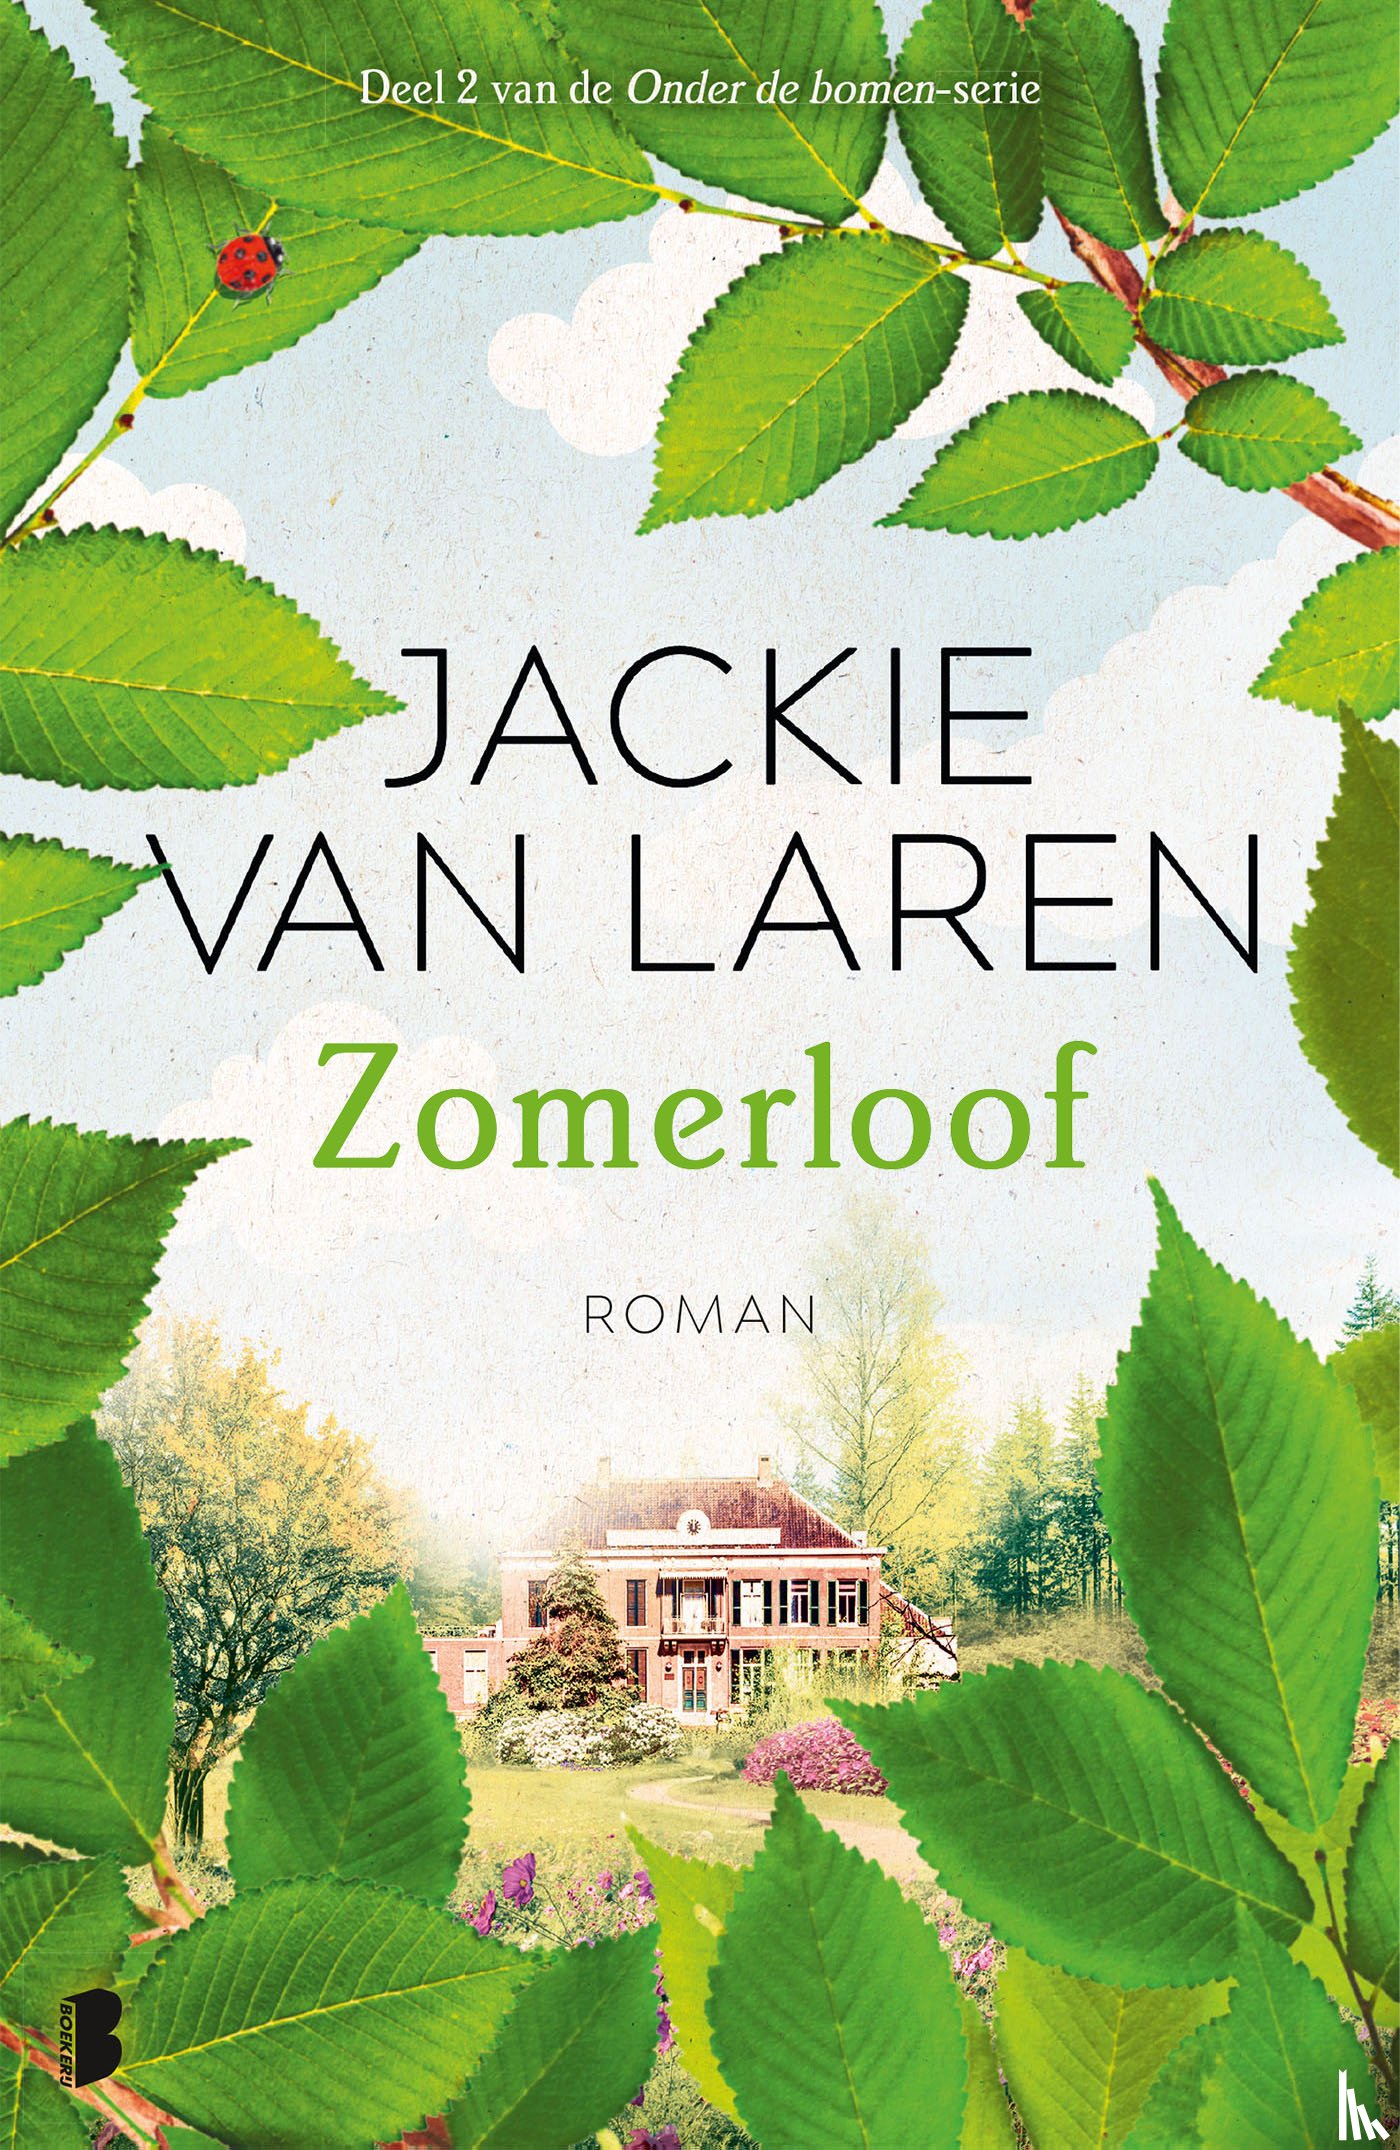 Laren, Jackie van - Zomerloof